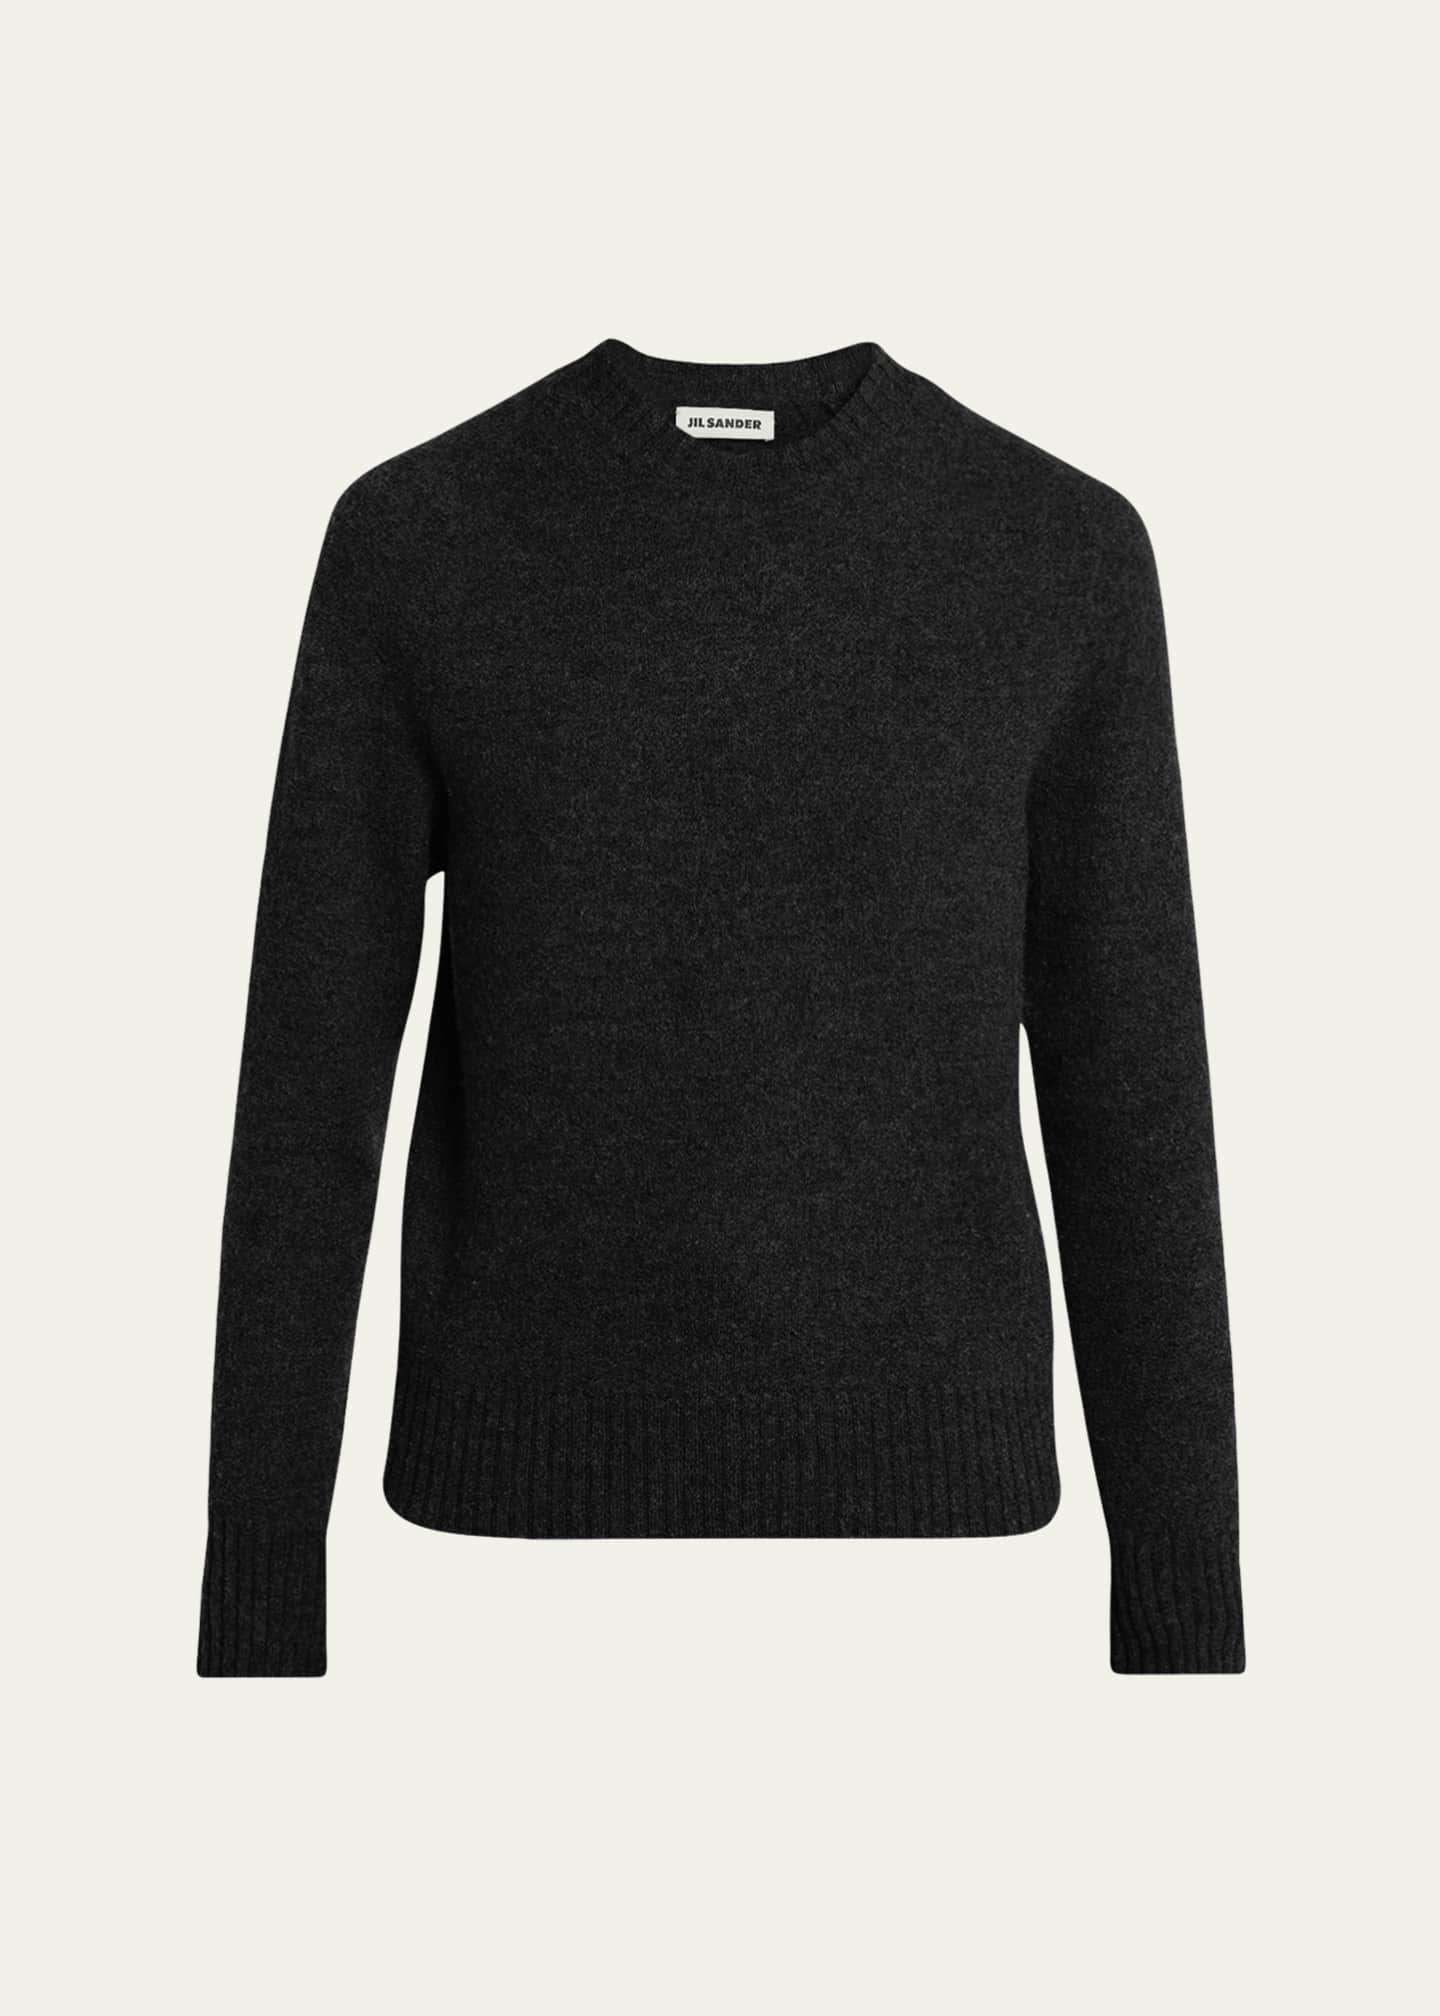 Jil Sander Wool Knit Sweater - Bergdorf Goodman